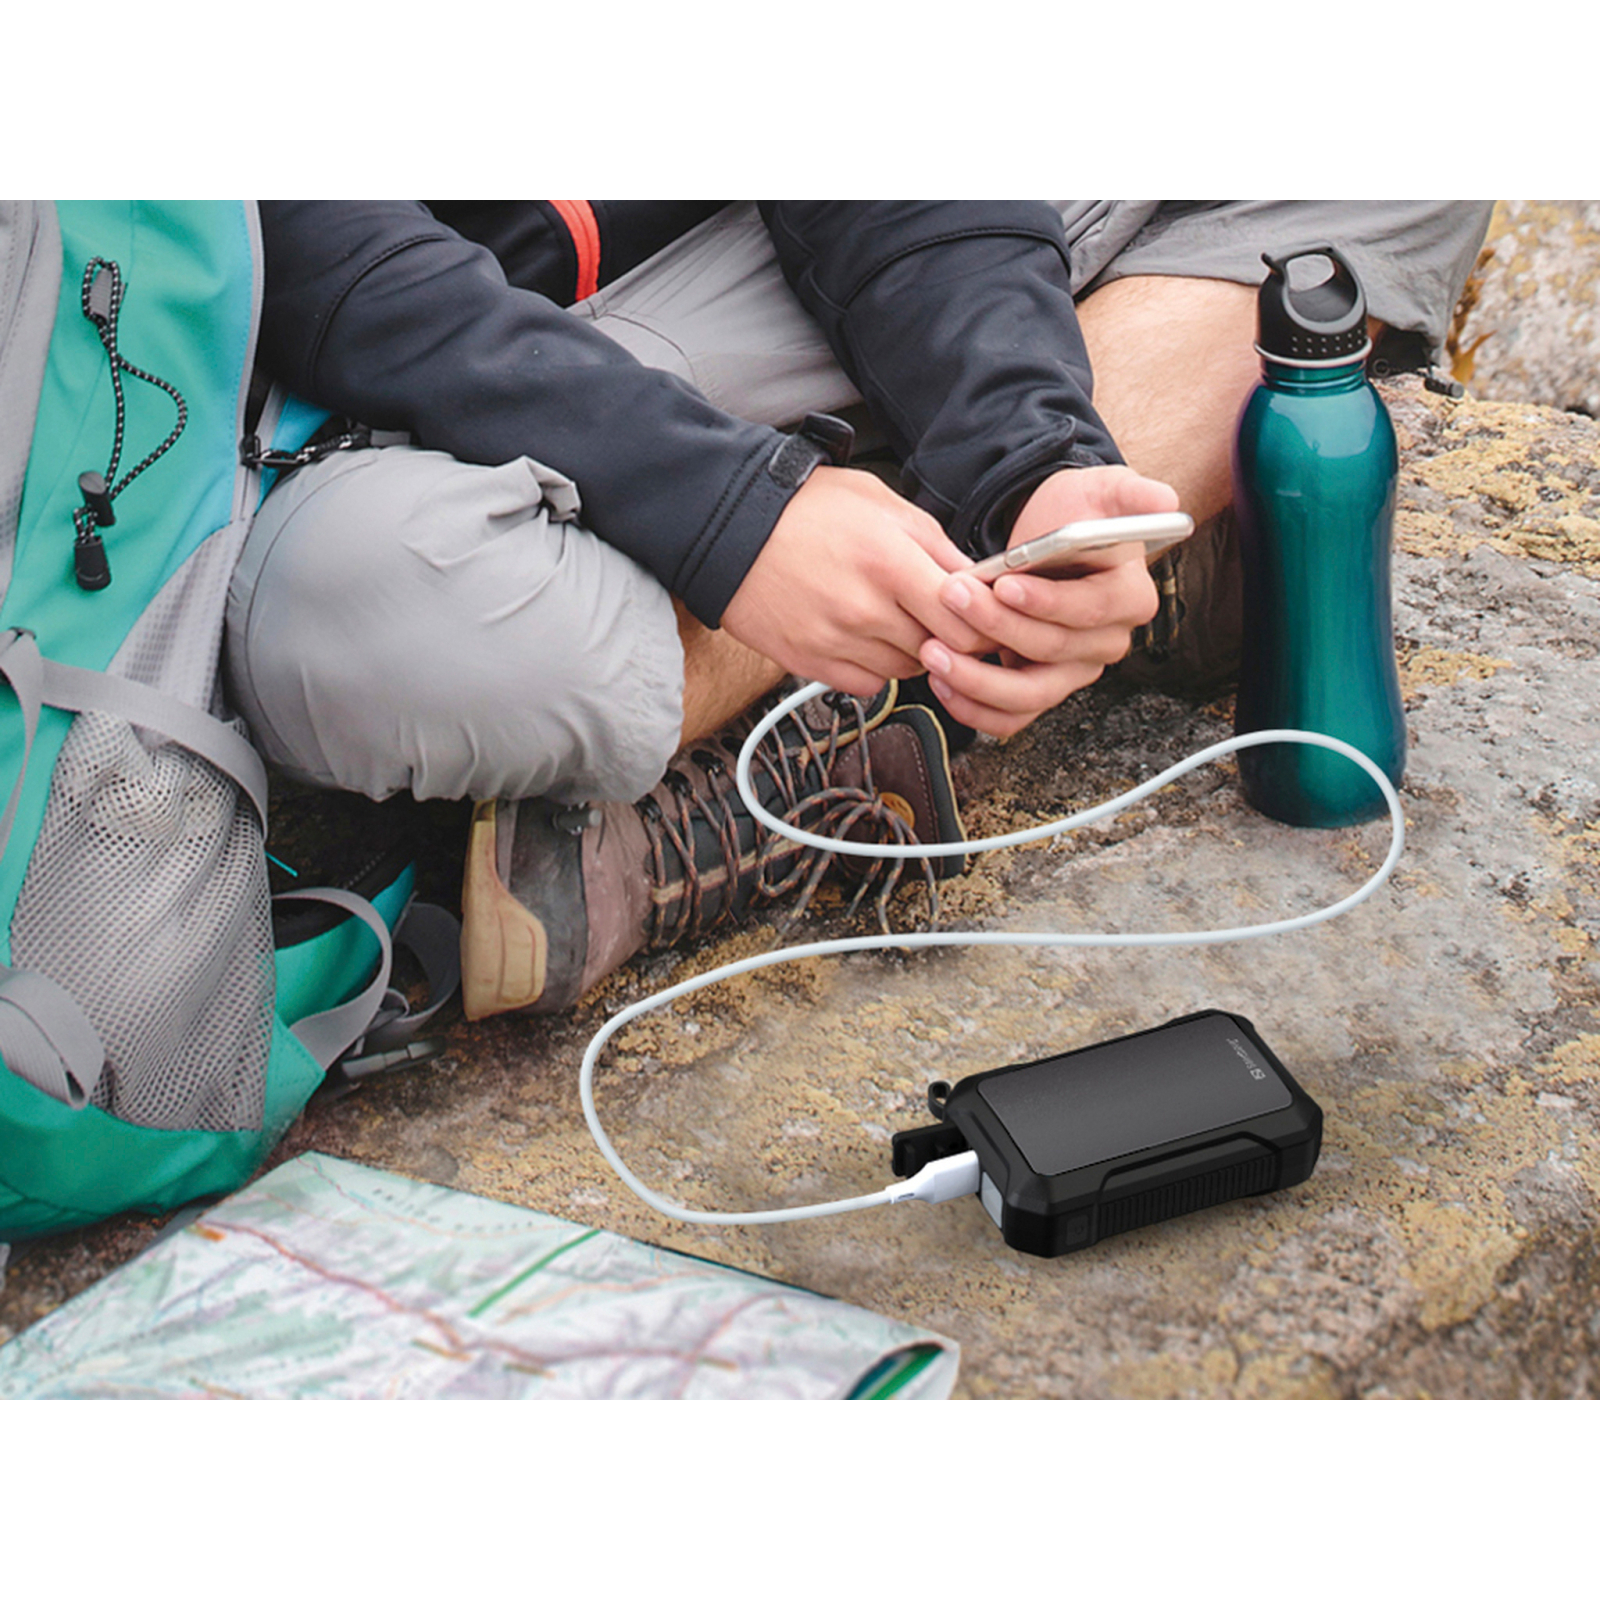 Батарея универсальная Sandberg 10000mAh, Hand Warmer, flashlight 1W, USB-C/USB-A 2A/5V (420-65) изображение 5